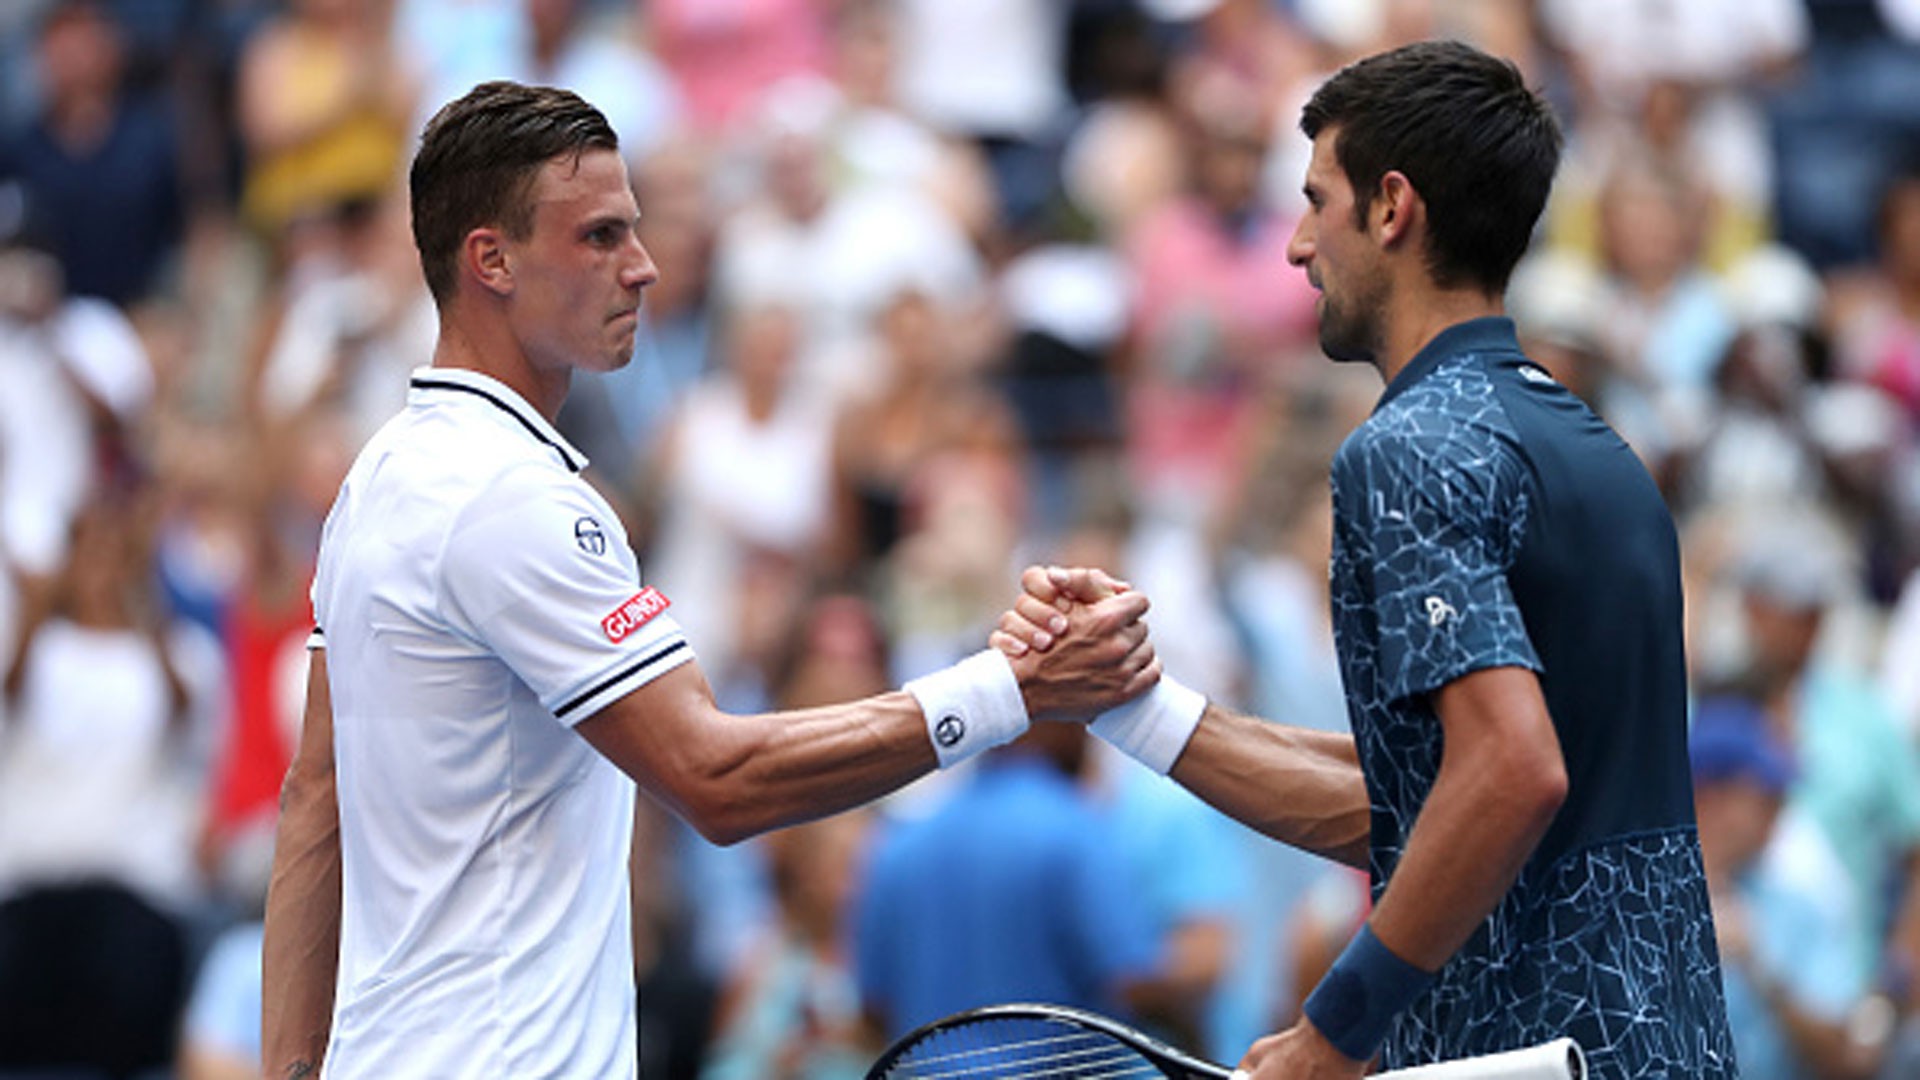 Djokovic suýt... nôn, Andy Murray uống 2 lít nước để chống nóng tại US Open 2018 - Ảnh 1.